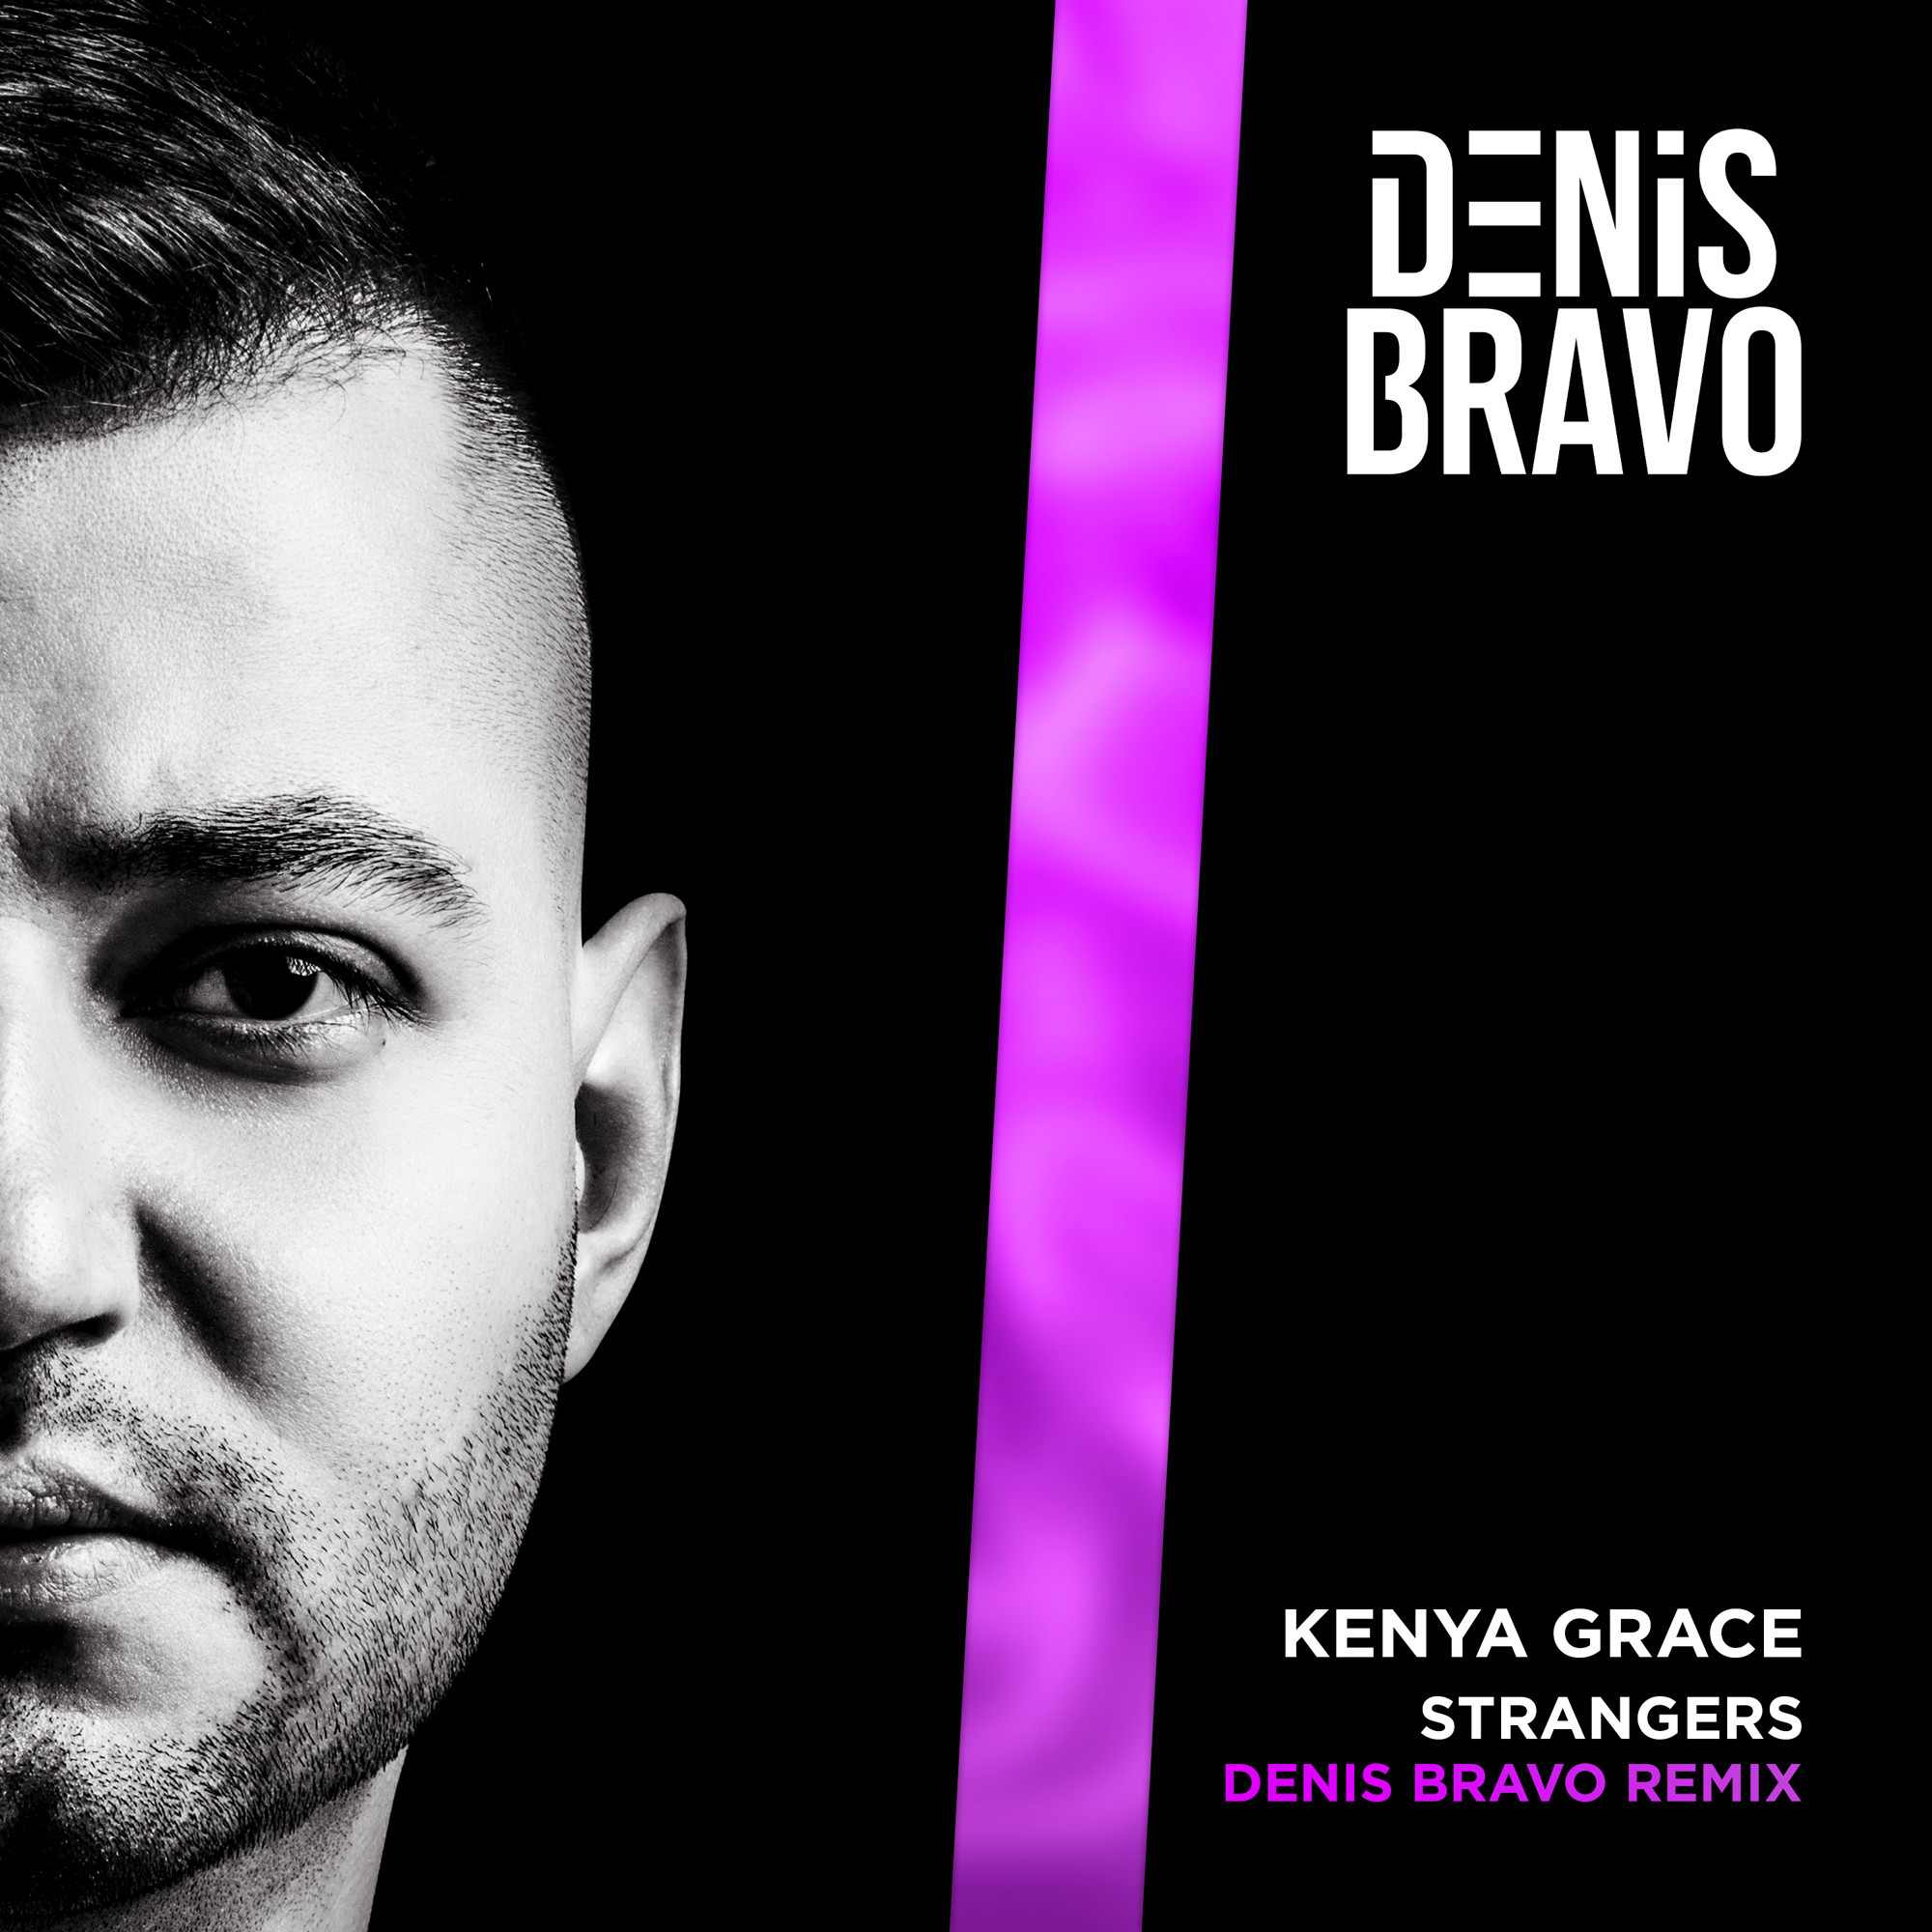 Strangers - Kenya Grace